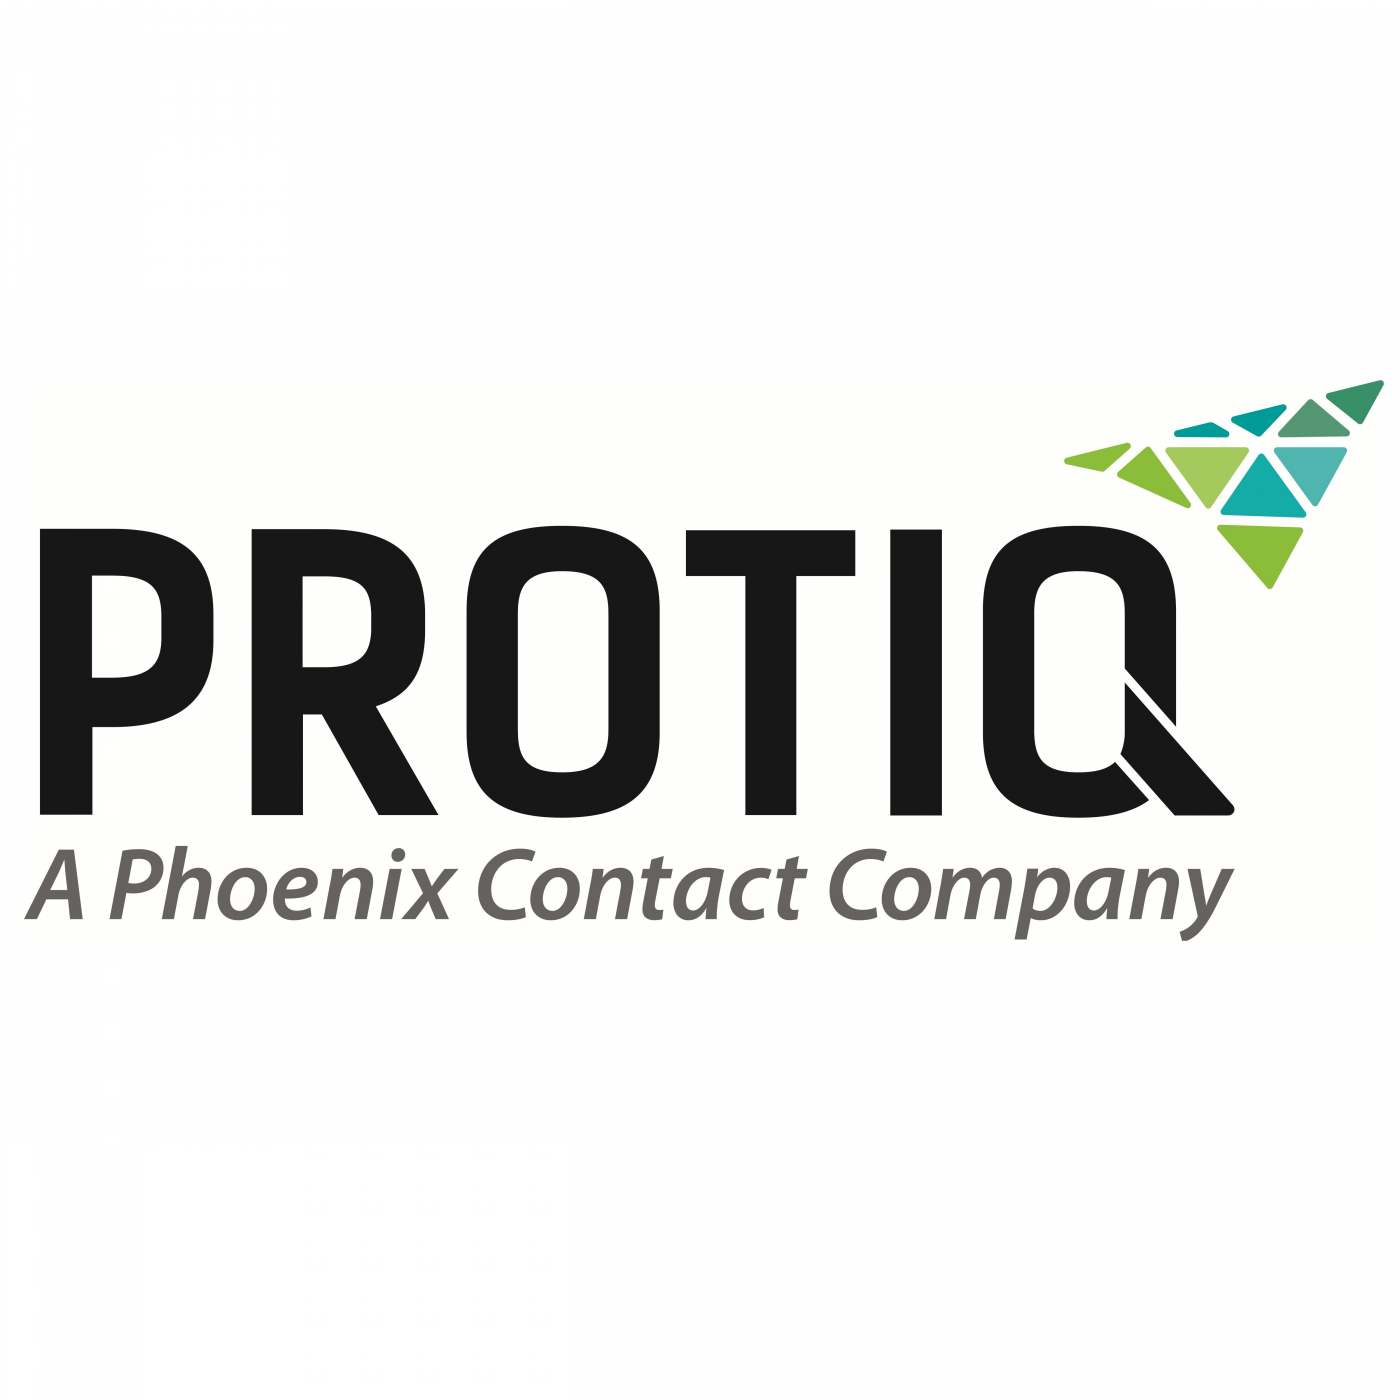 PROTIQ GmbH